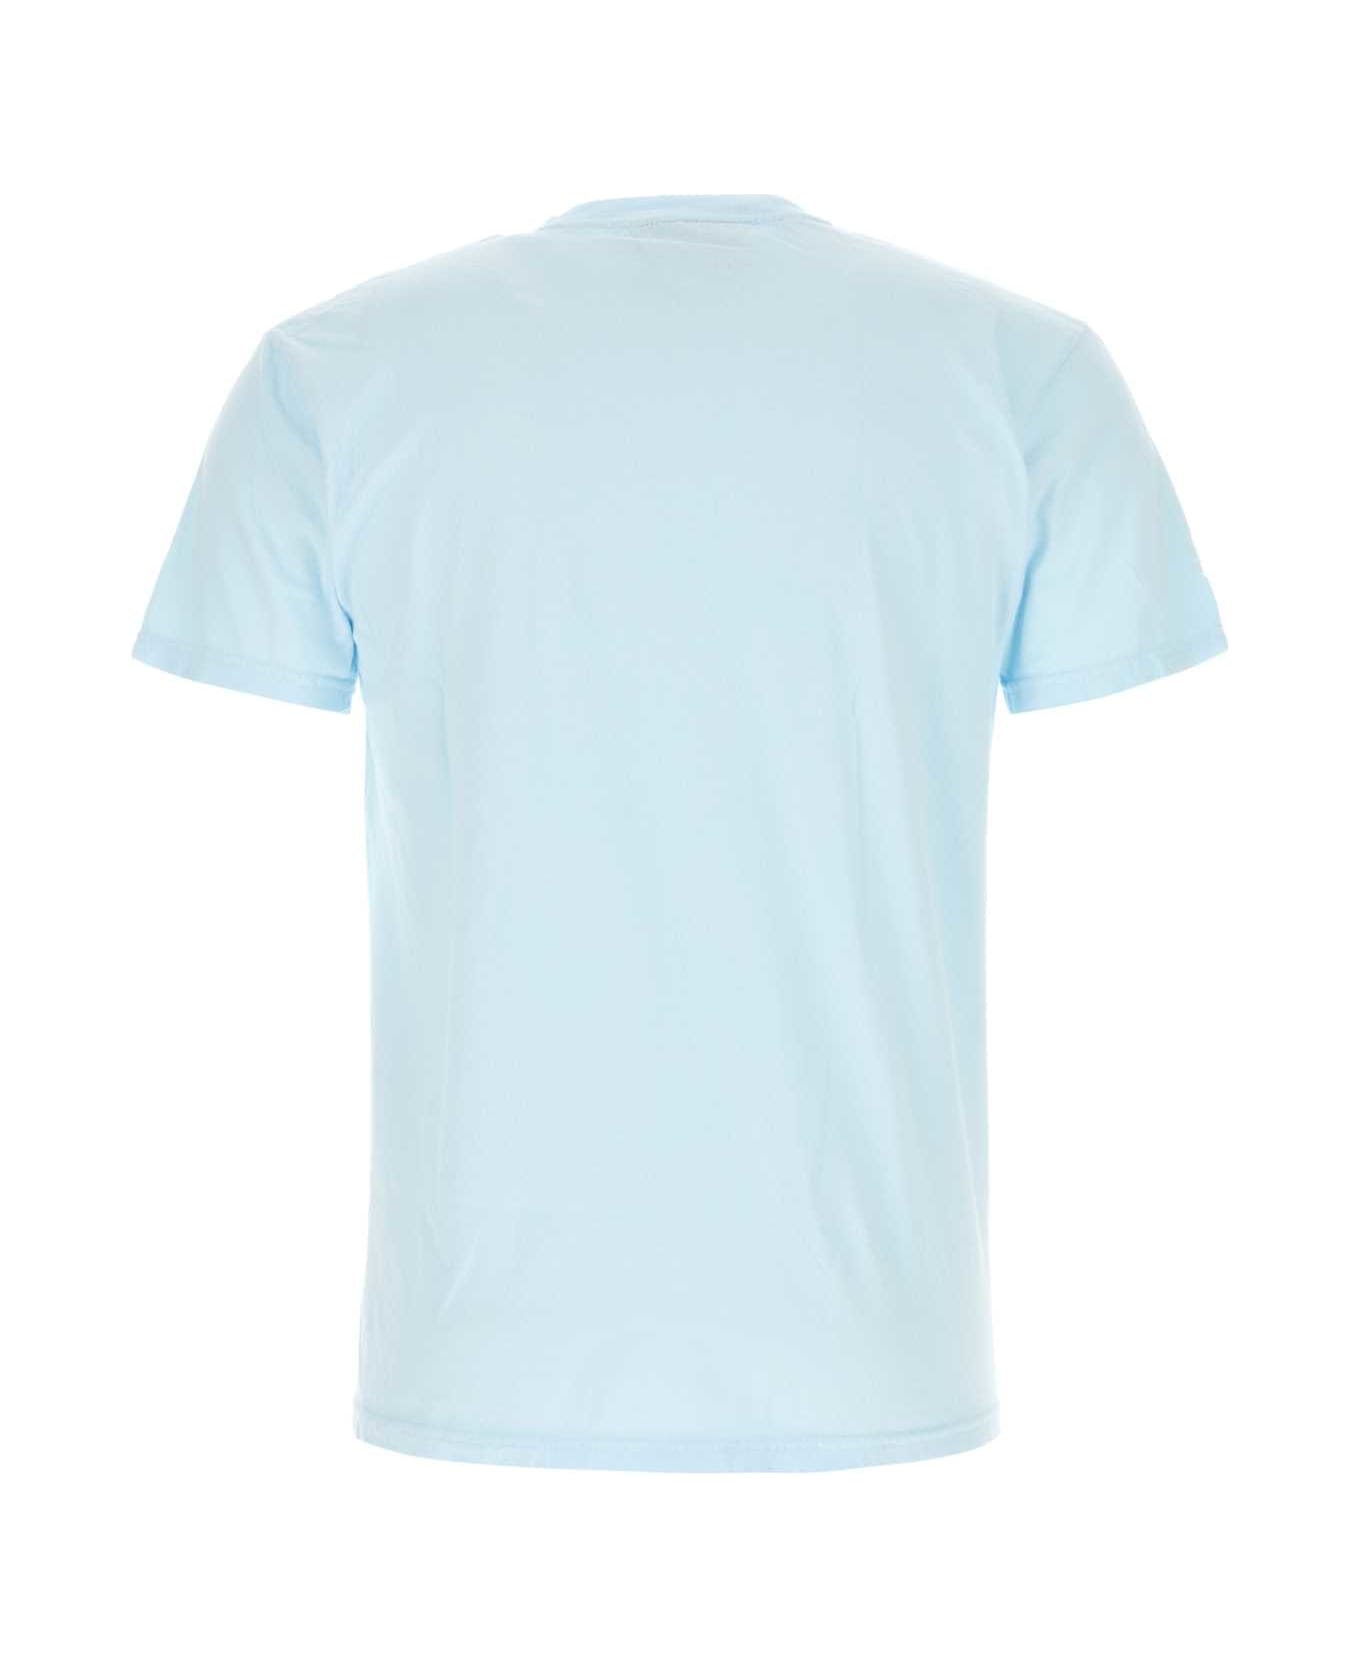 Kidsuper Light-blue Cotton T-shirt - KIDSUPERWAVE